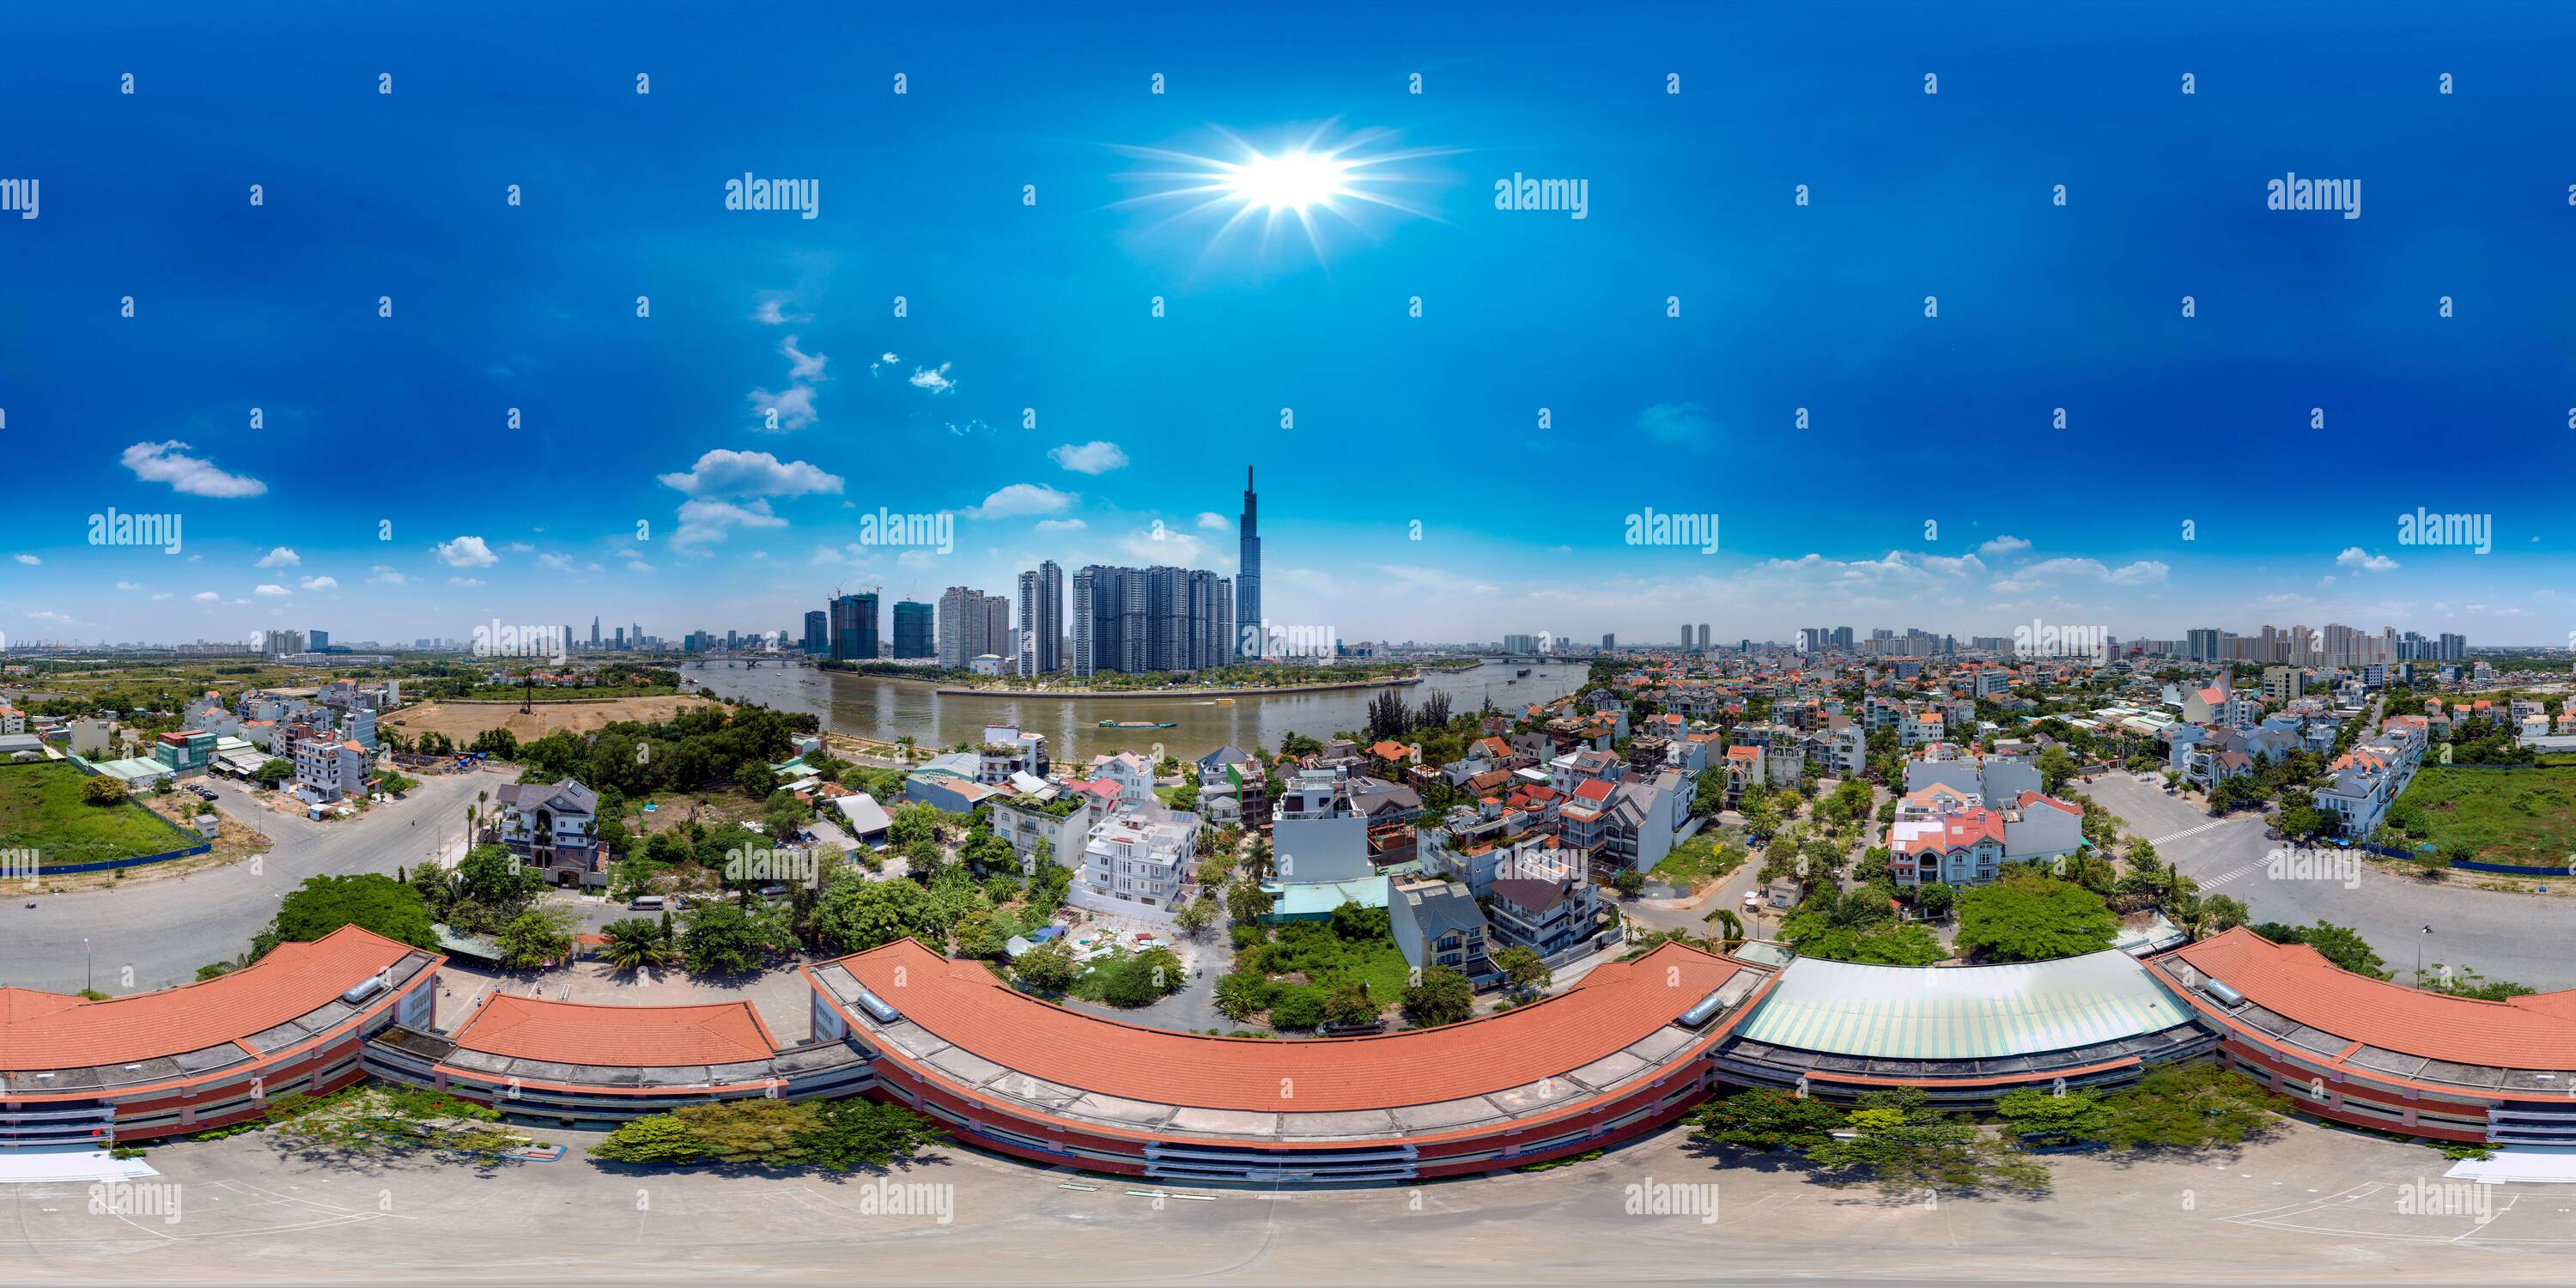 Visualizzazione panoramica a 360 gradi di 360 Vista panoramica su una tipica scuola secondaria pubblica vietnamita con HCMC e case in stile Vinhomes sullo sfondo dell'immagine.